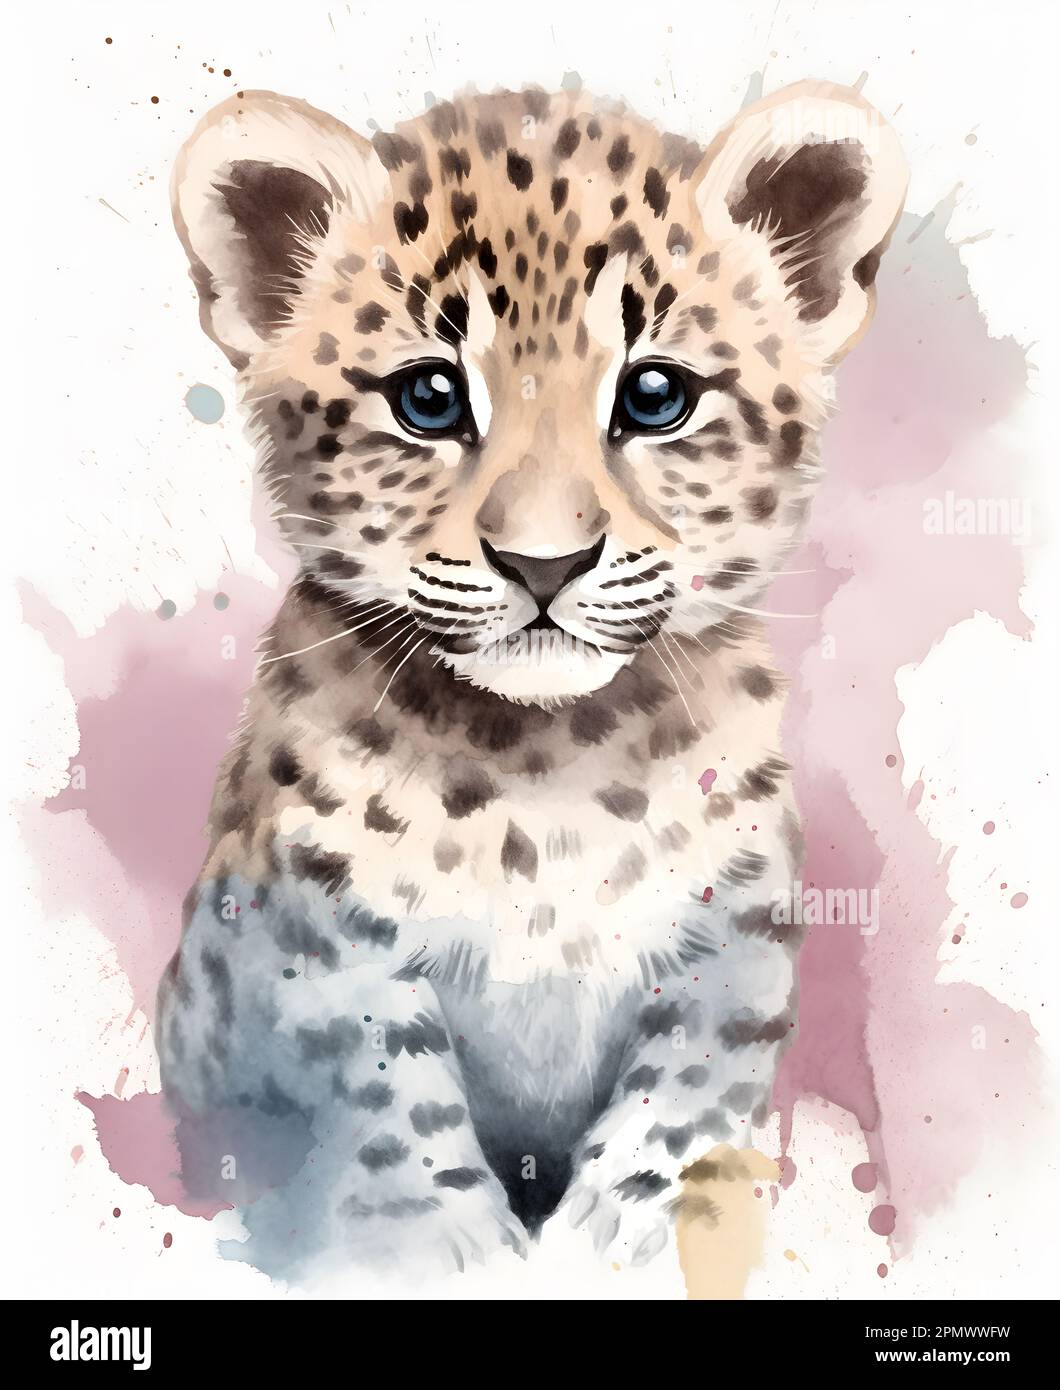 Illustration de l'aquarelle d'un joli léopard. Affiche pour les enfants avec des animaux amusants et heureux. Banque D'Images